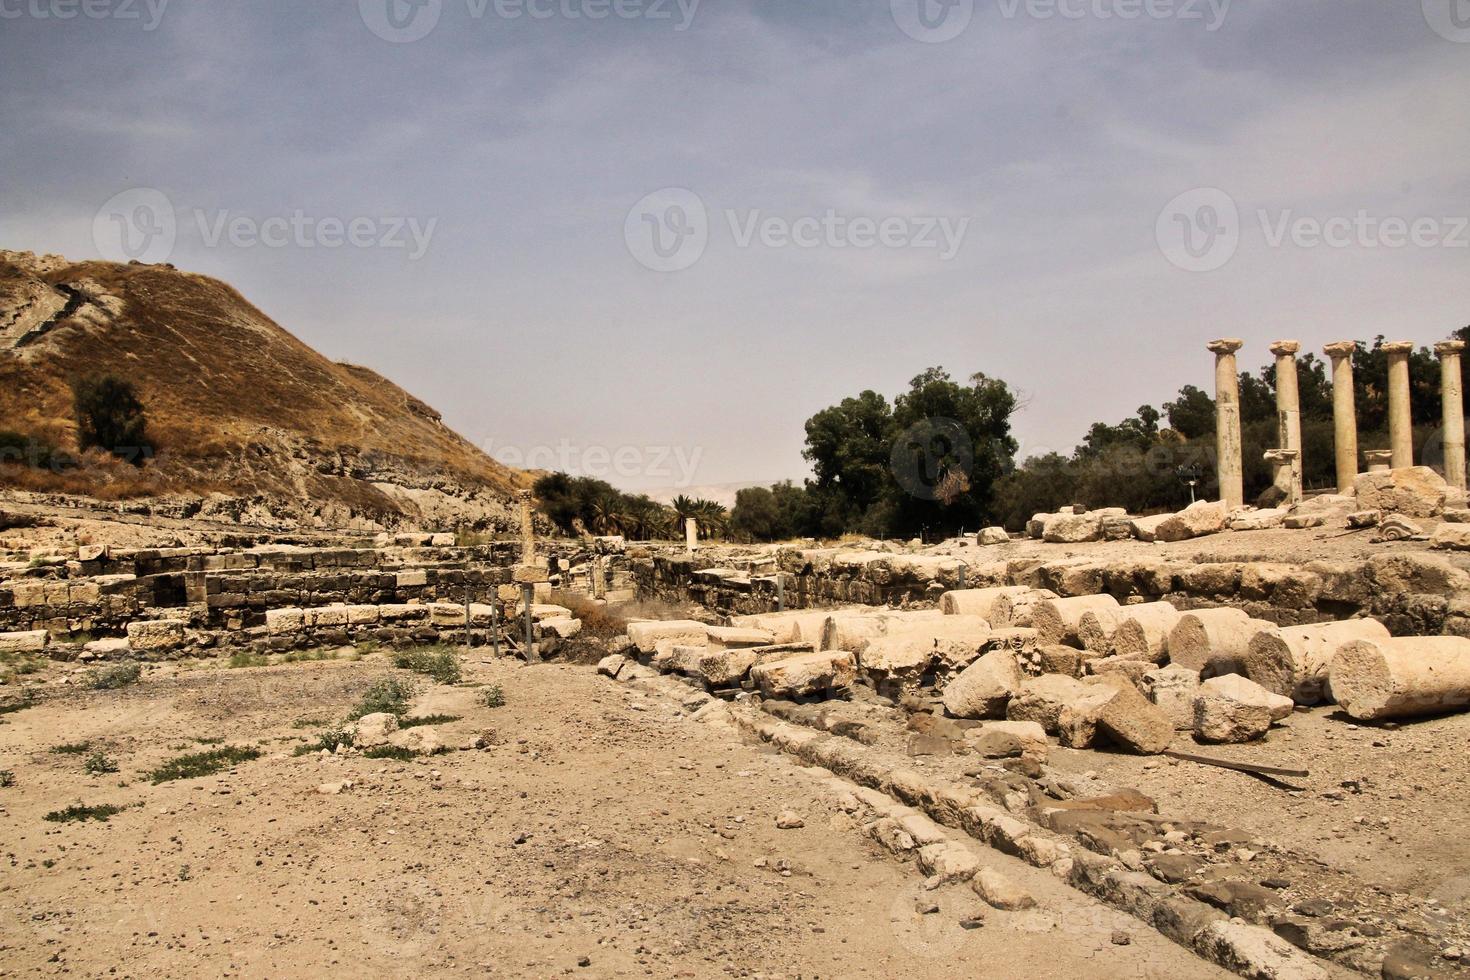 une vue de l'ancienne ville romaine de beit shean en israël photo